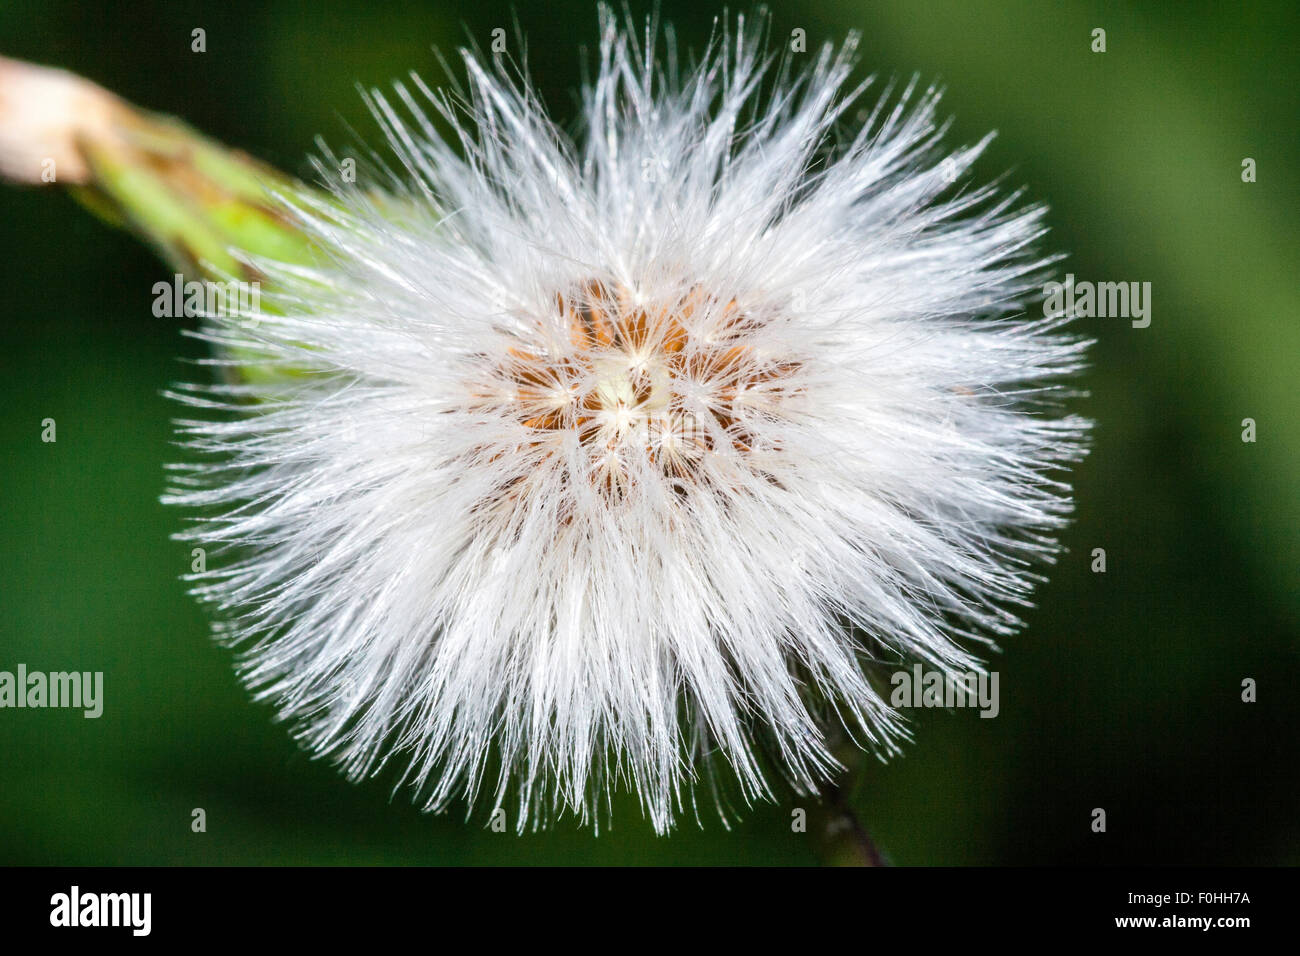 Makro Nahaufnahme eines thristle Samen Kopf, die weichen Fasern spritzen nach außen von der Blume Kopf gegen grünen Hintergrund. Stockfoto